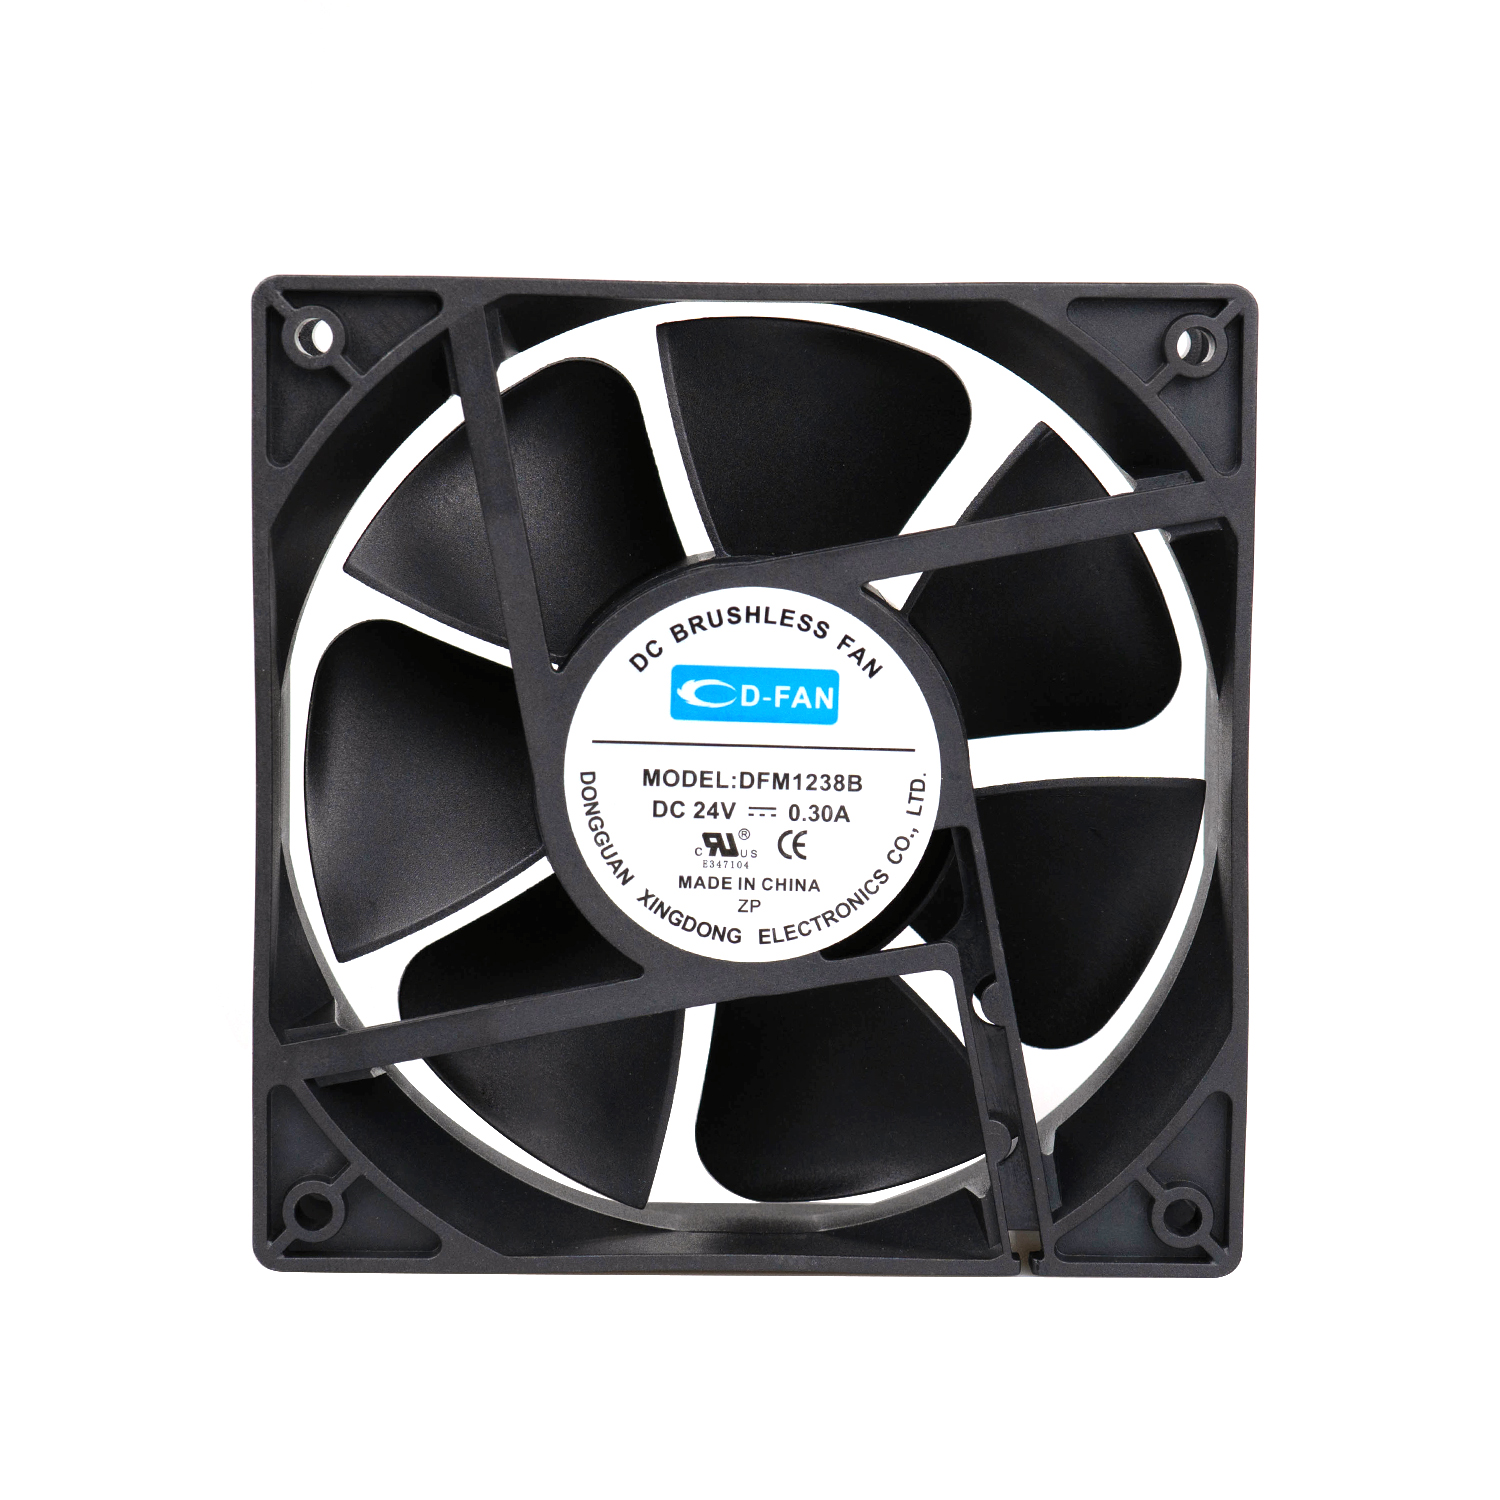 High quality 12V 24V 120mm DC axial fan